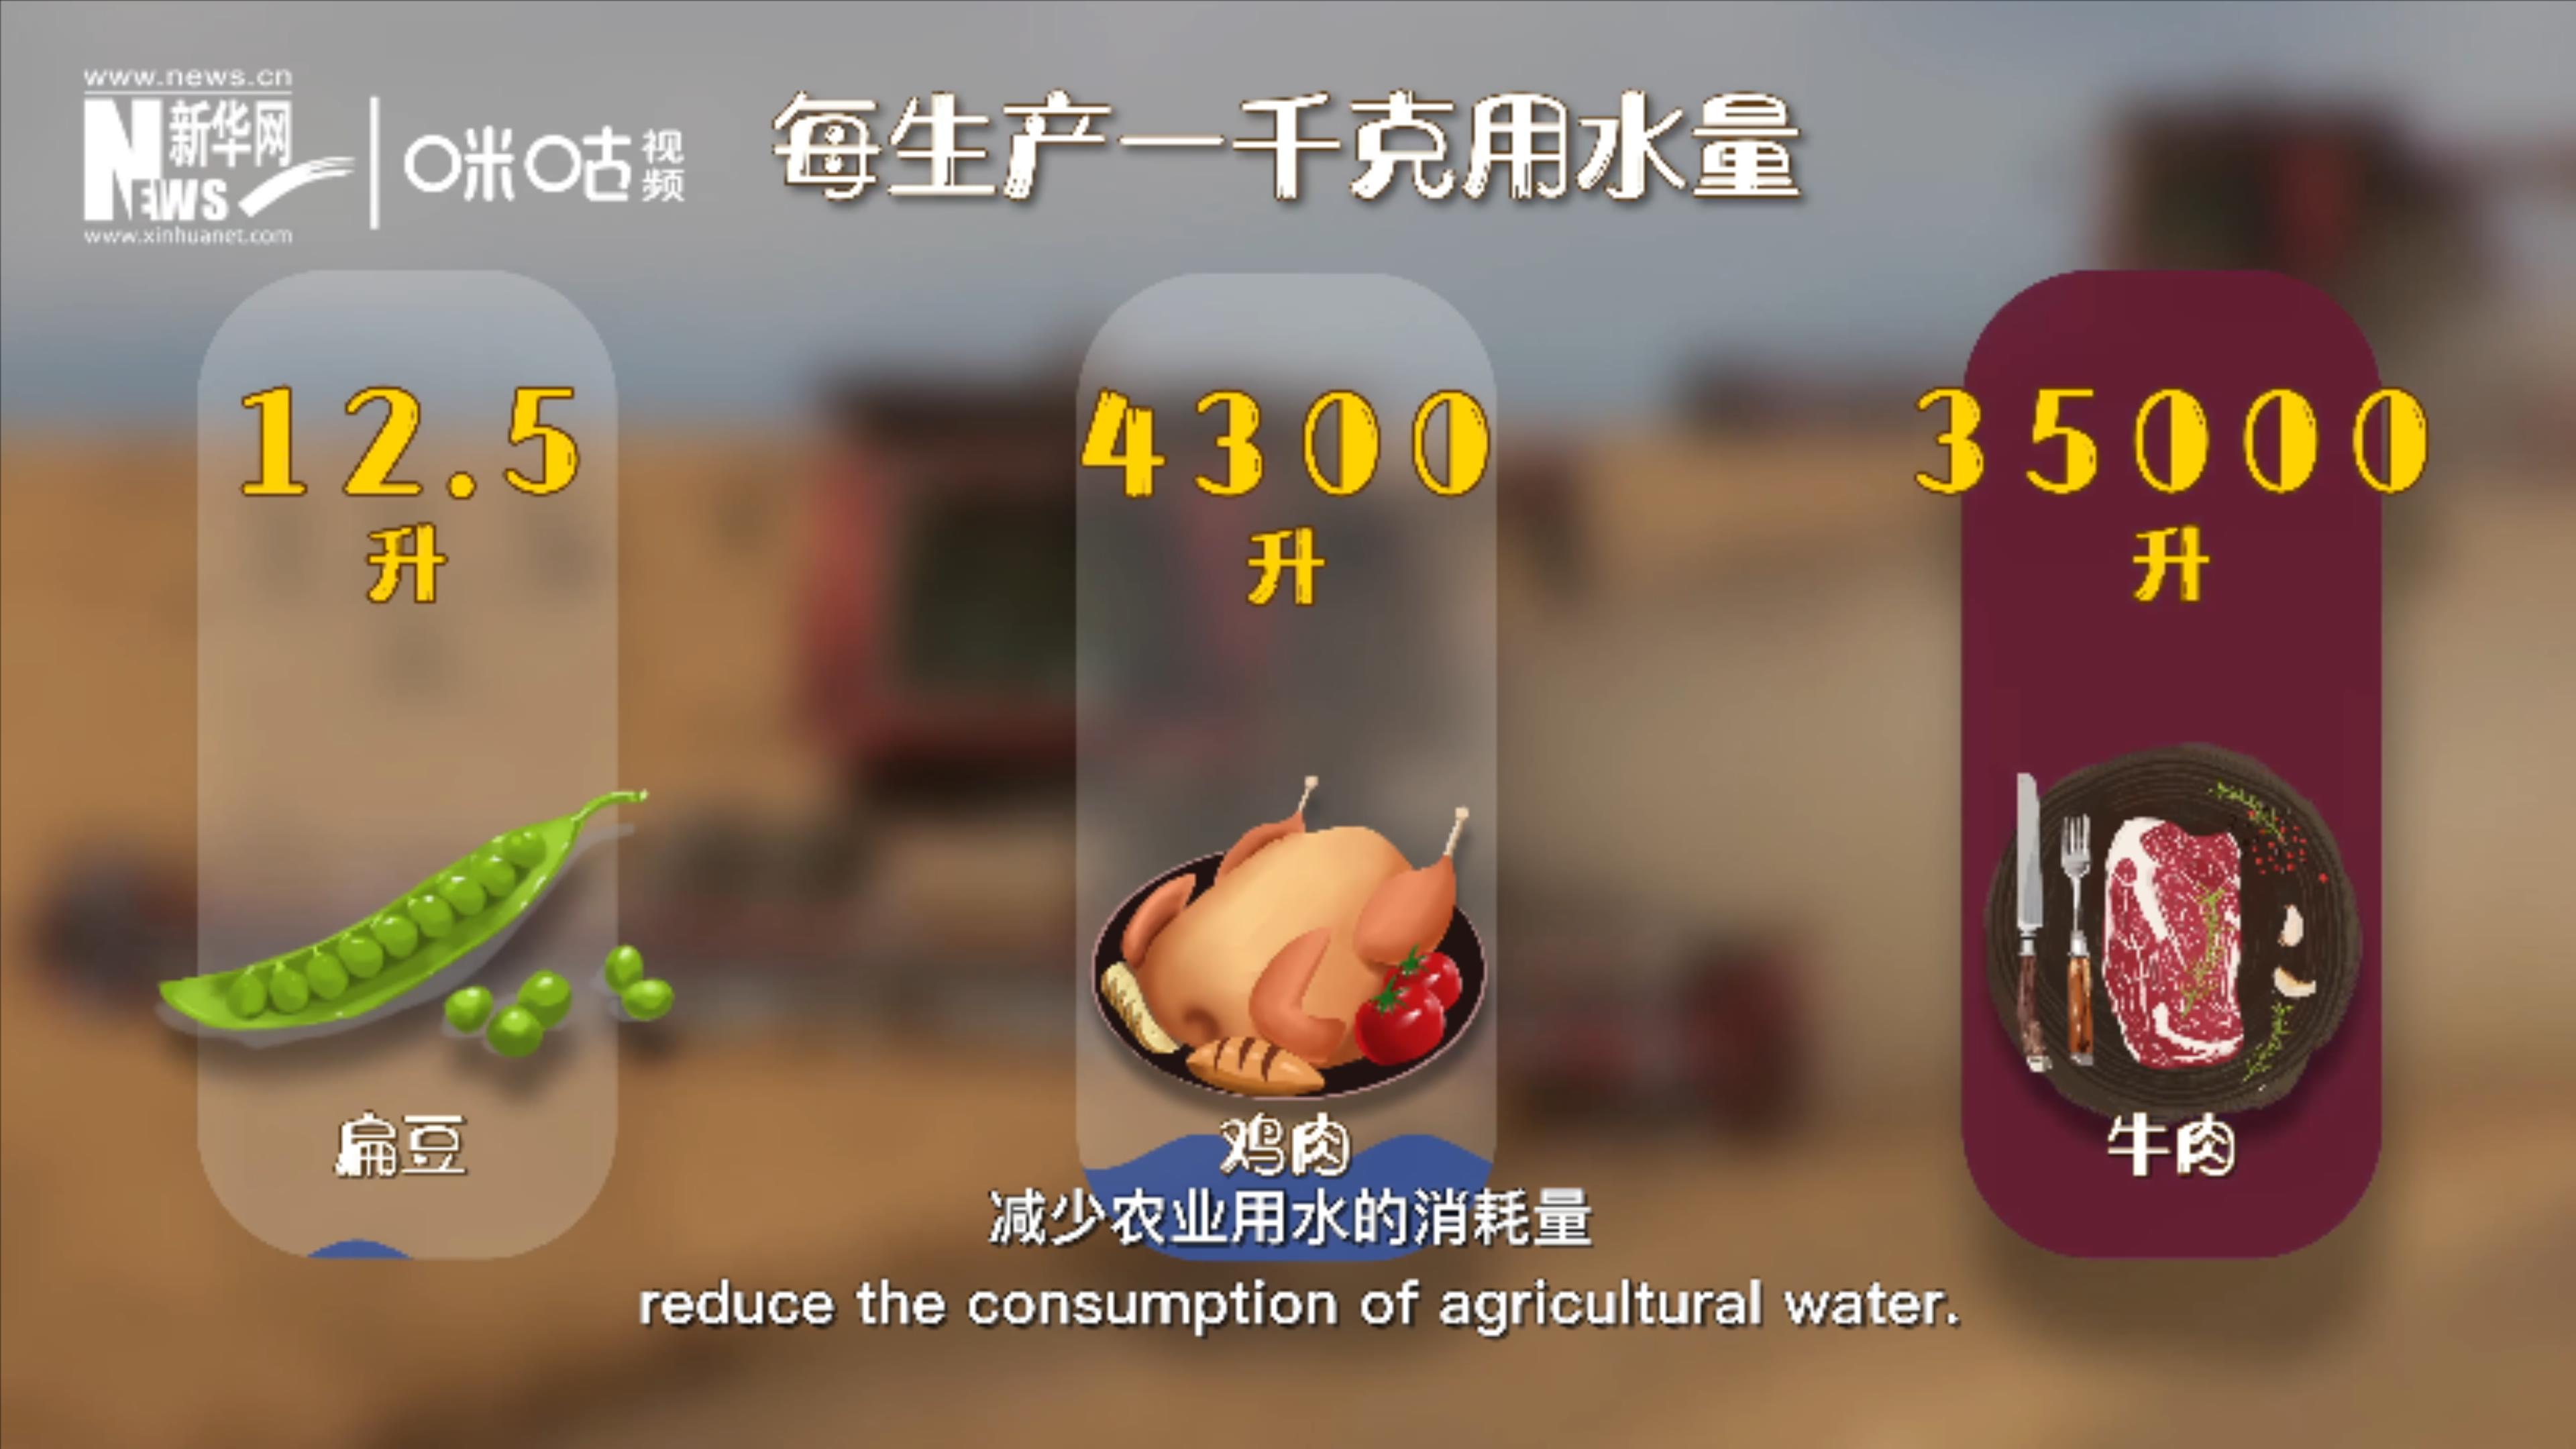 种植豆类可有效减少农业用水的消耗量